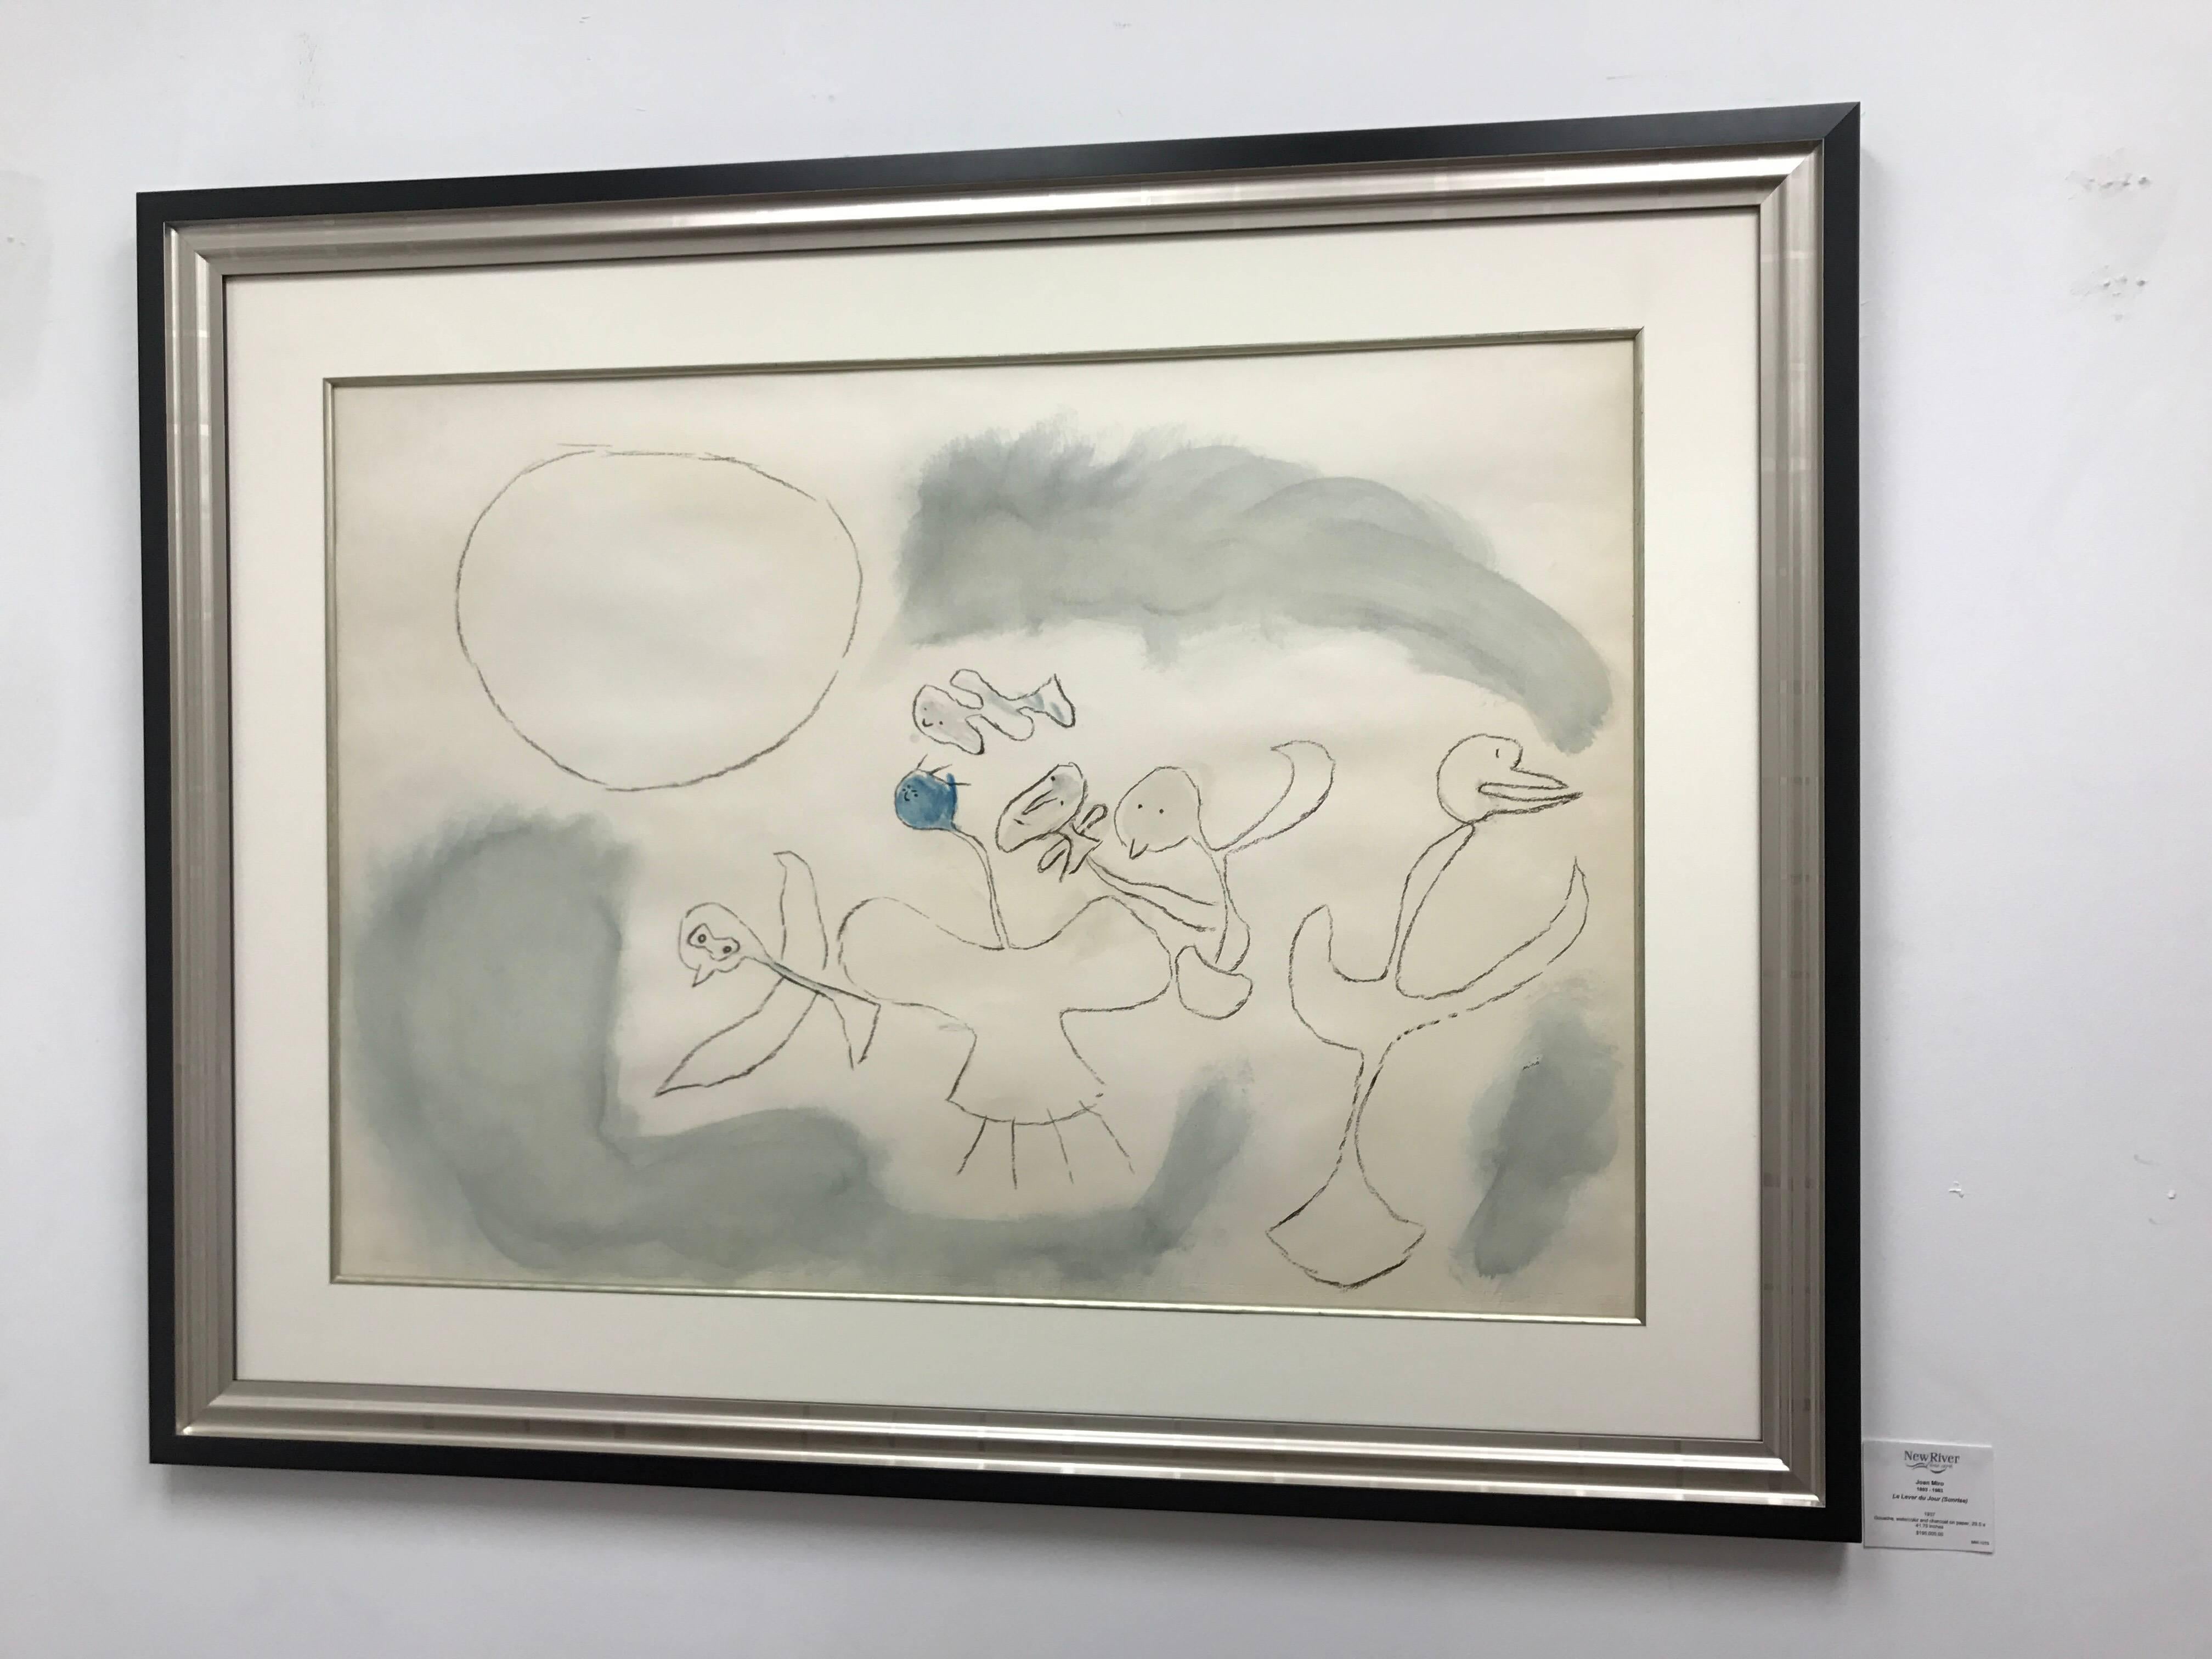 Le Lever Du Jour (Sunrise) - Painting by Joan Miró